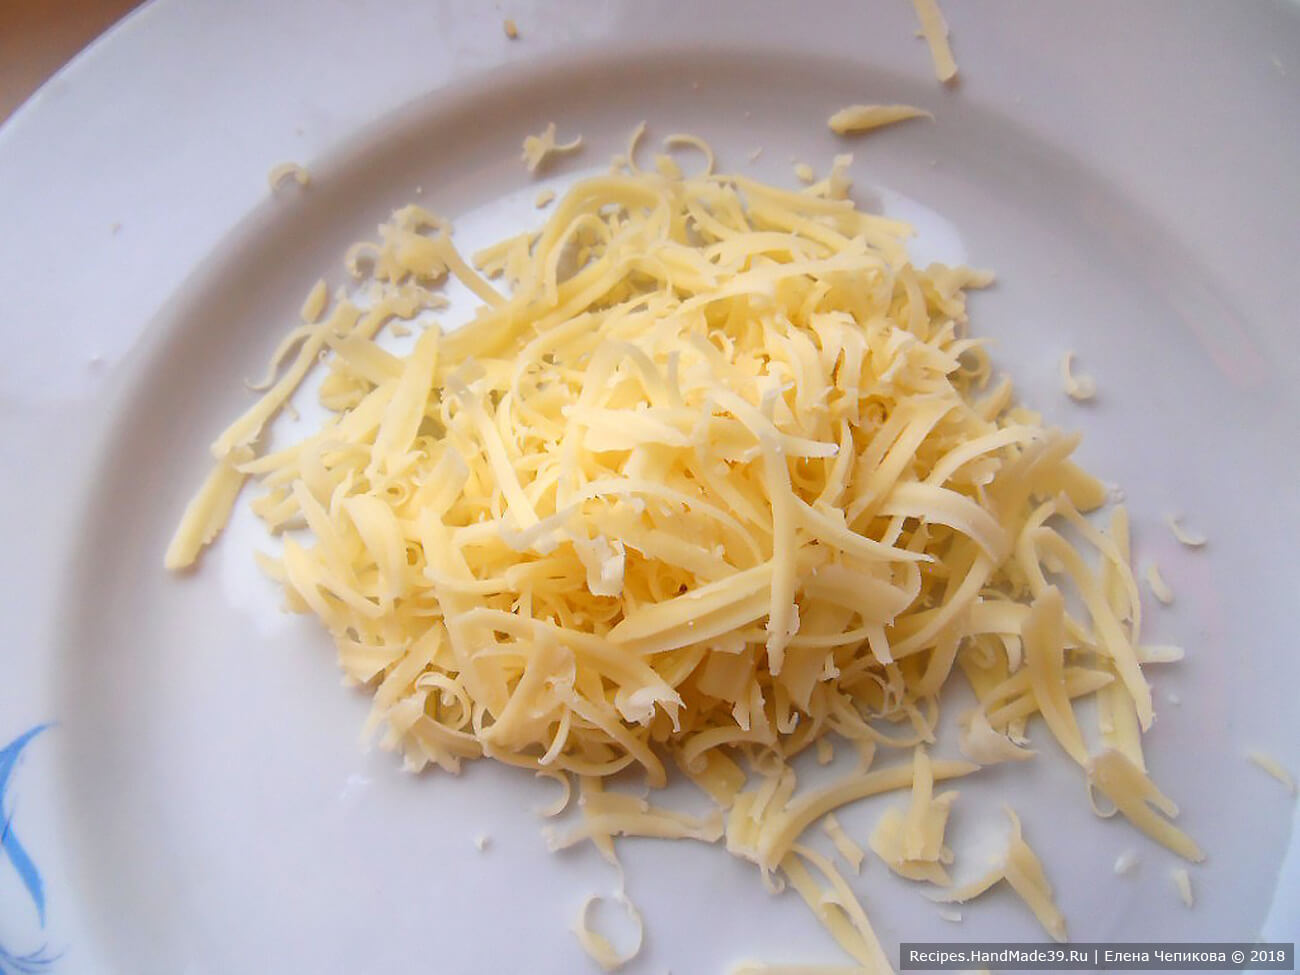 Сыр натереть на средней тёрке